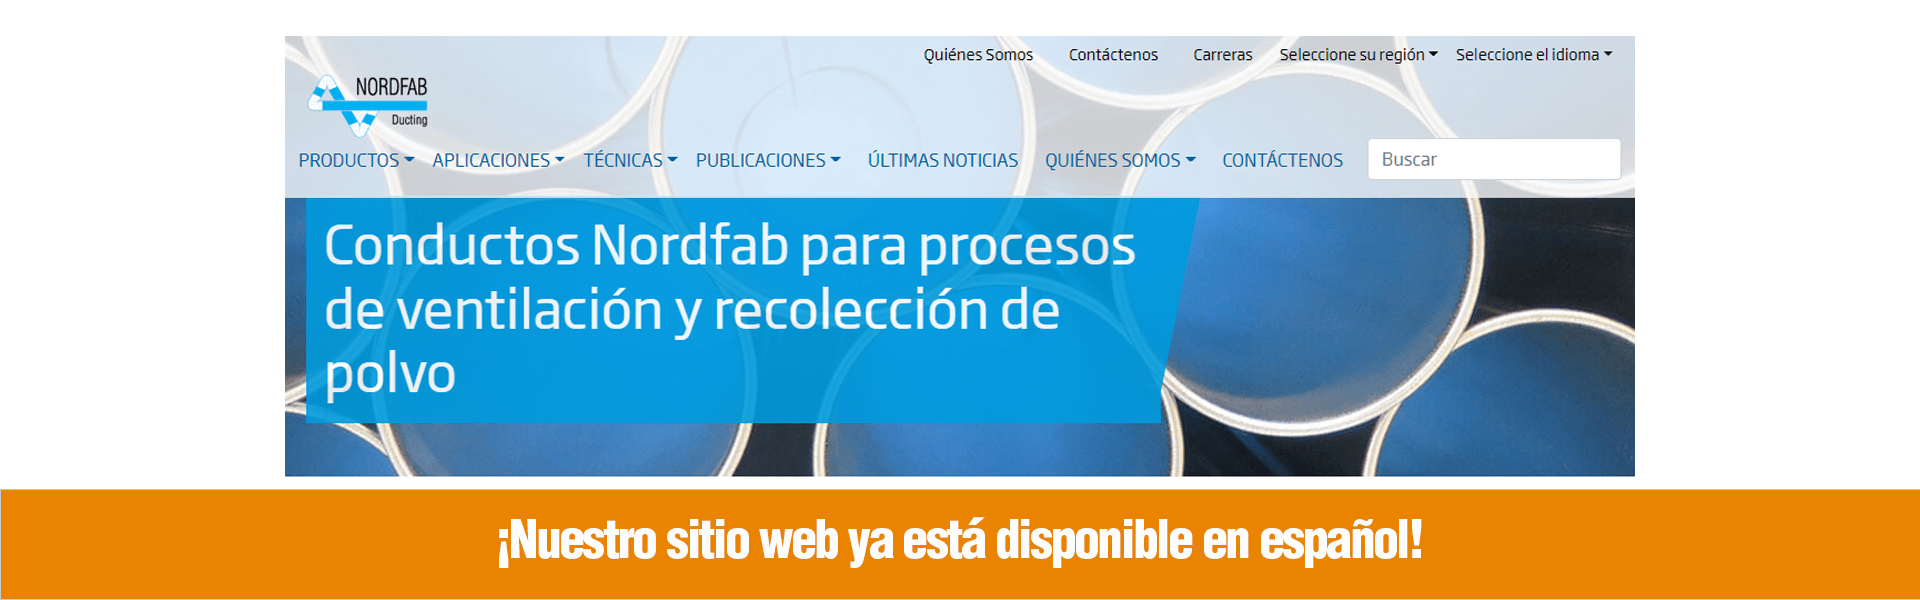 Nuestro sitio web ya está disponible en español